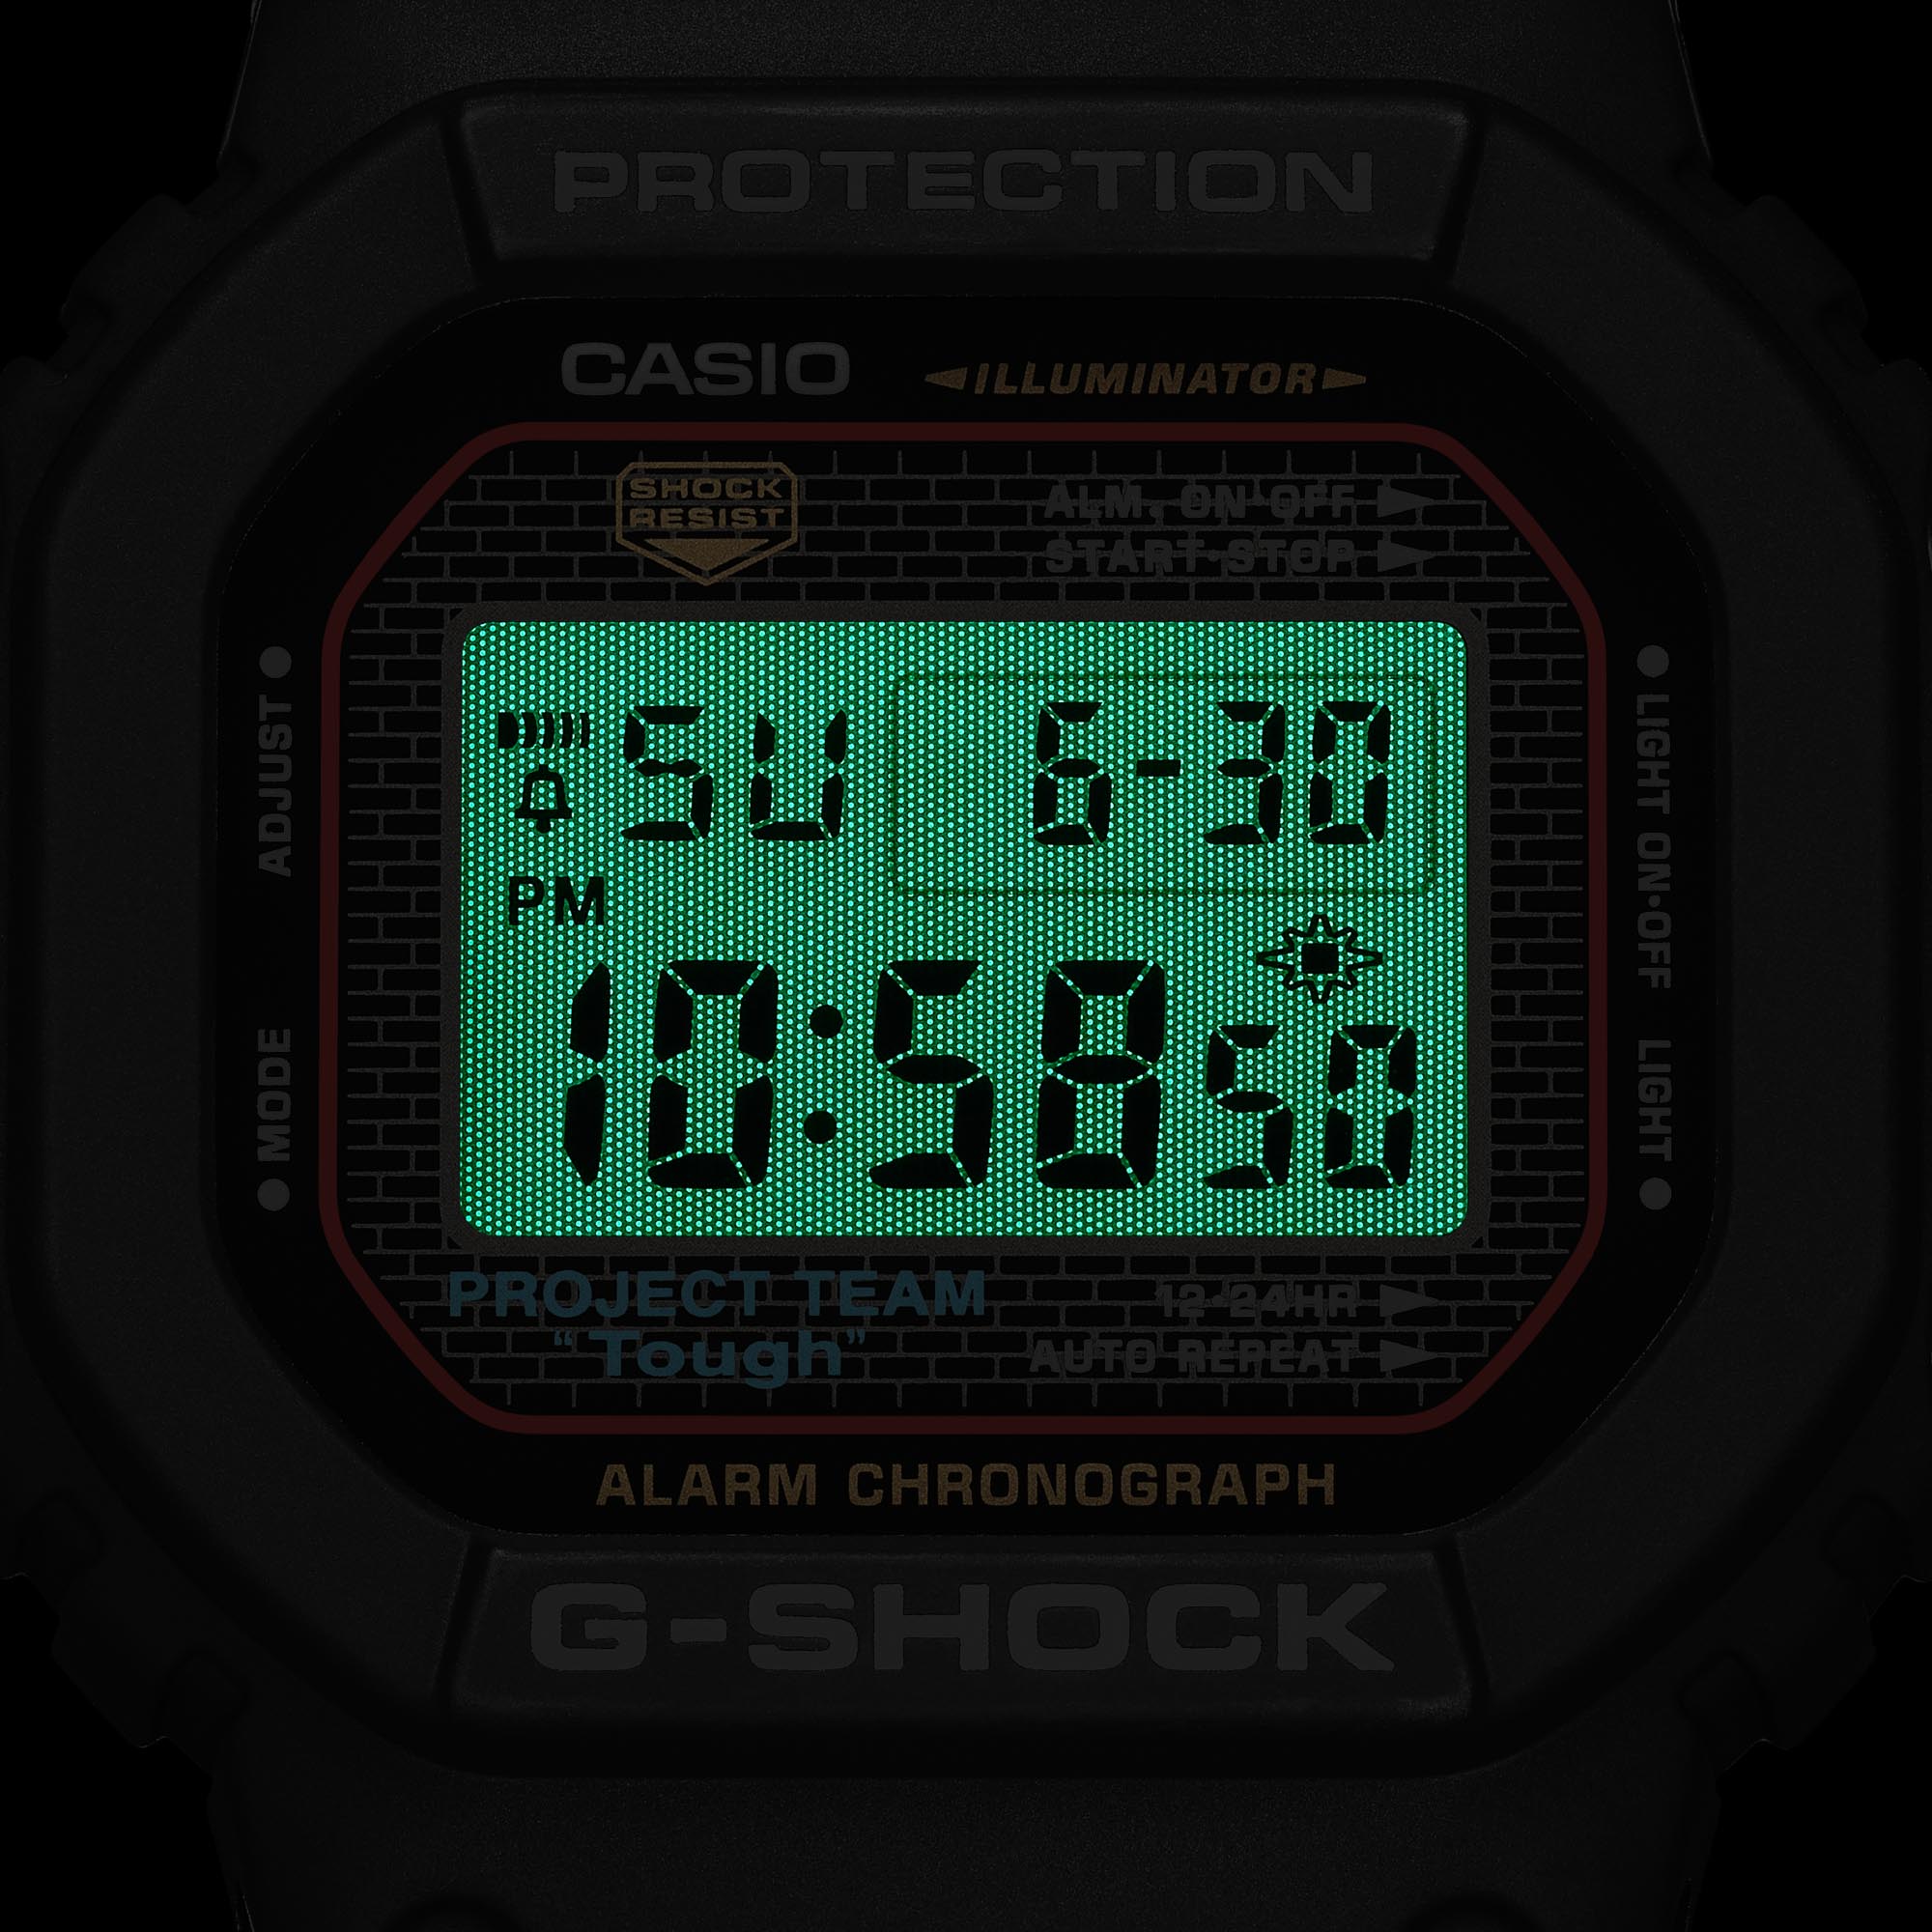 Casio выпускает трио часов G-Shock, посвященных 40-летнему юбилею